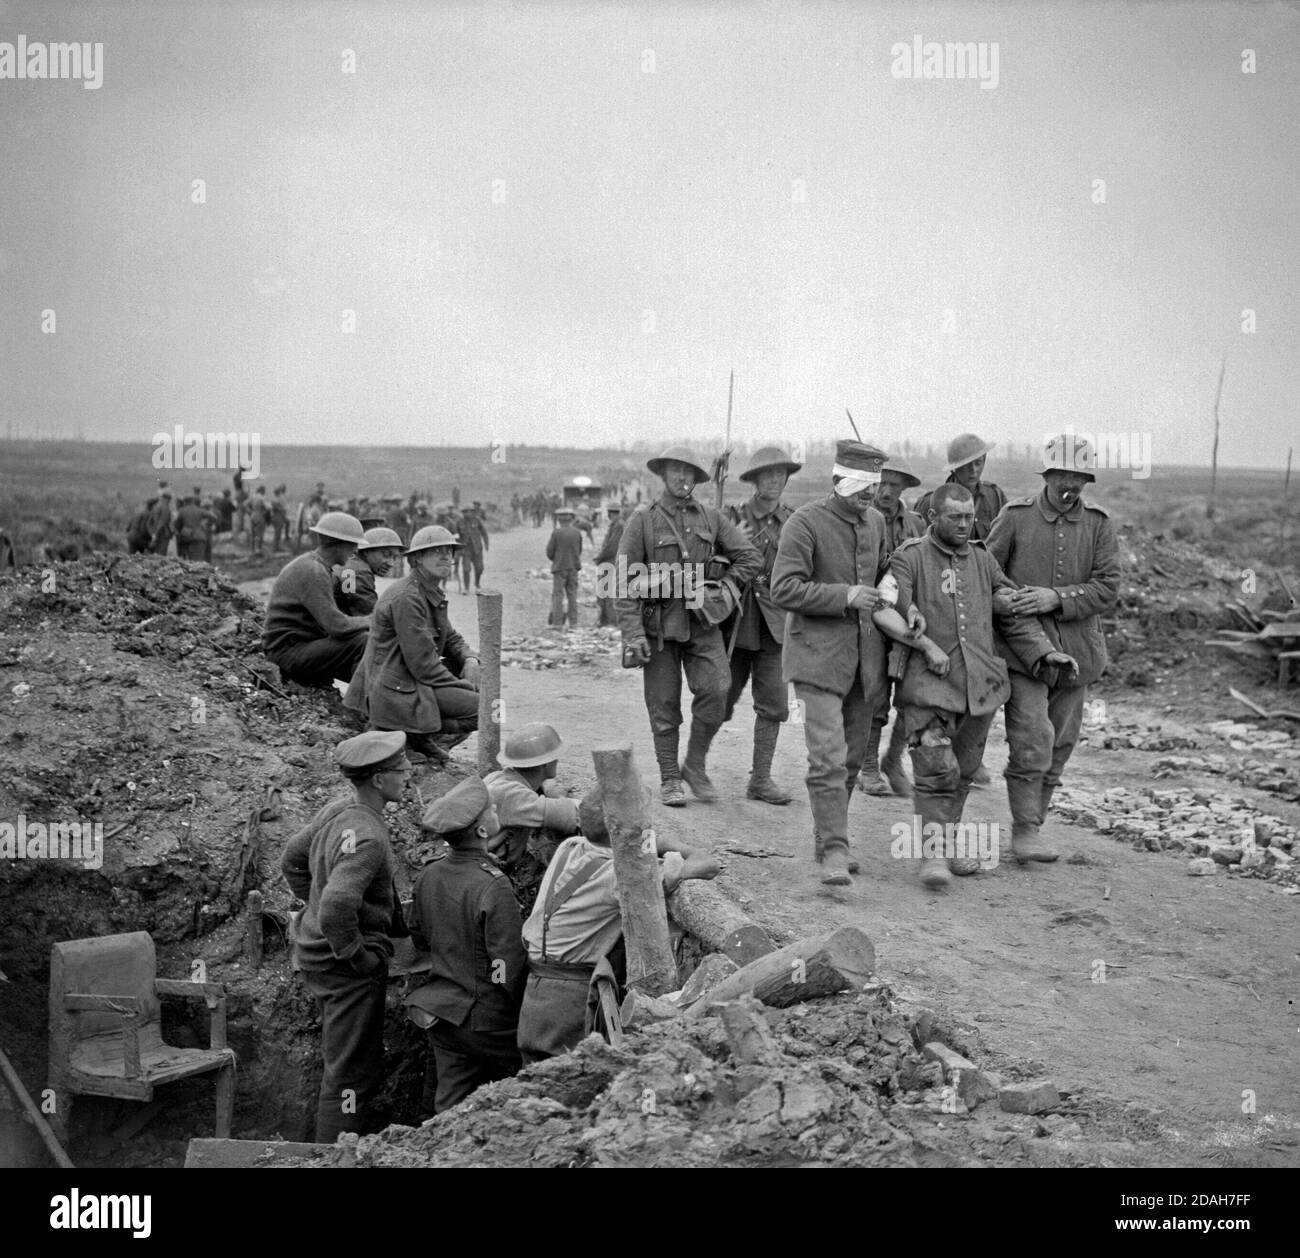 Die Schlacht an der Somme, Juli - November 1916 Schlacht von Guillemont. Britische gunners Beobachten deutsche Kriegsgefangene, Verwundete und sichtlich erschüttert, die nach der Einnahme von Guillemont. Schimpanse Tal, in der Nähe von Montauban. (Guillemont aufgenommen von 16 irischen Abteilung am 3. September 1916). Stockfoto